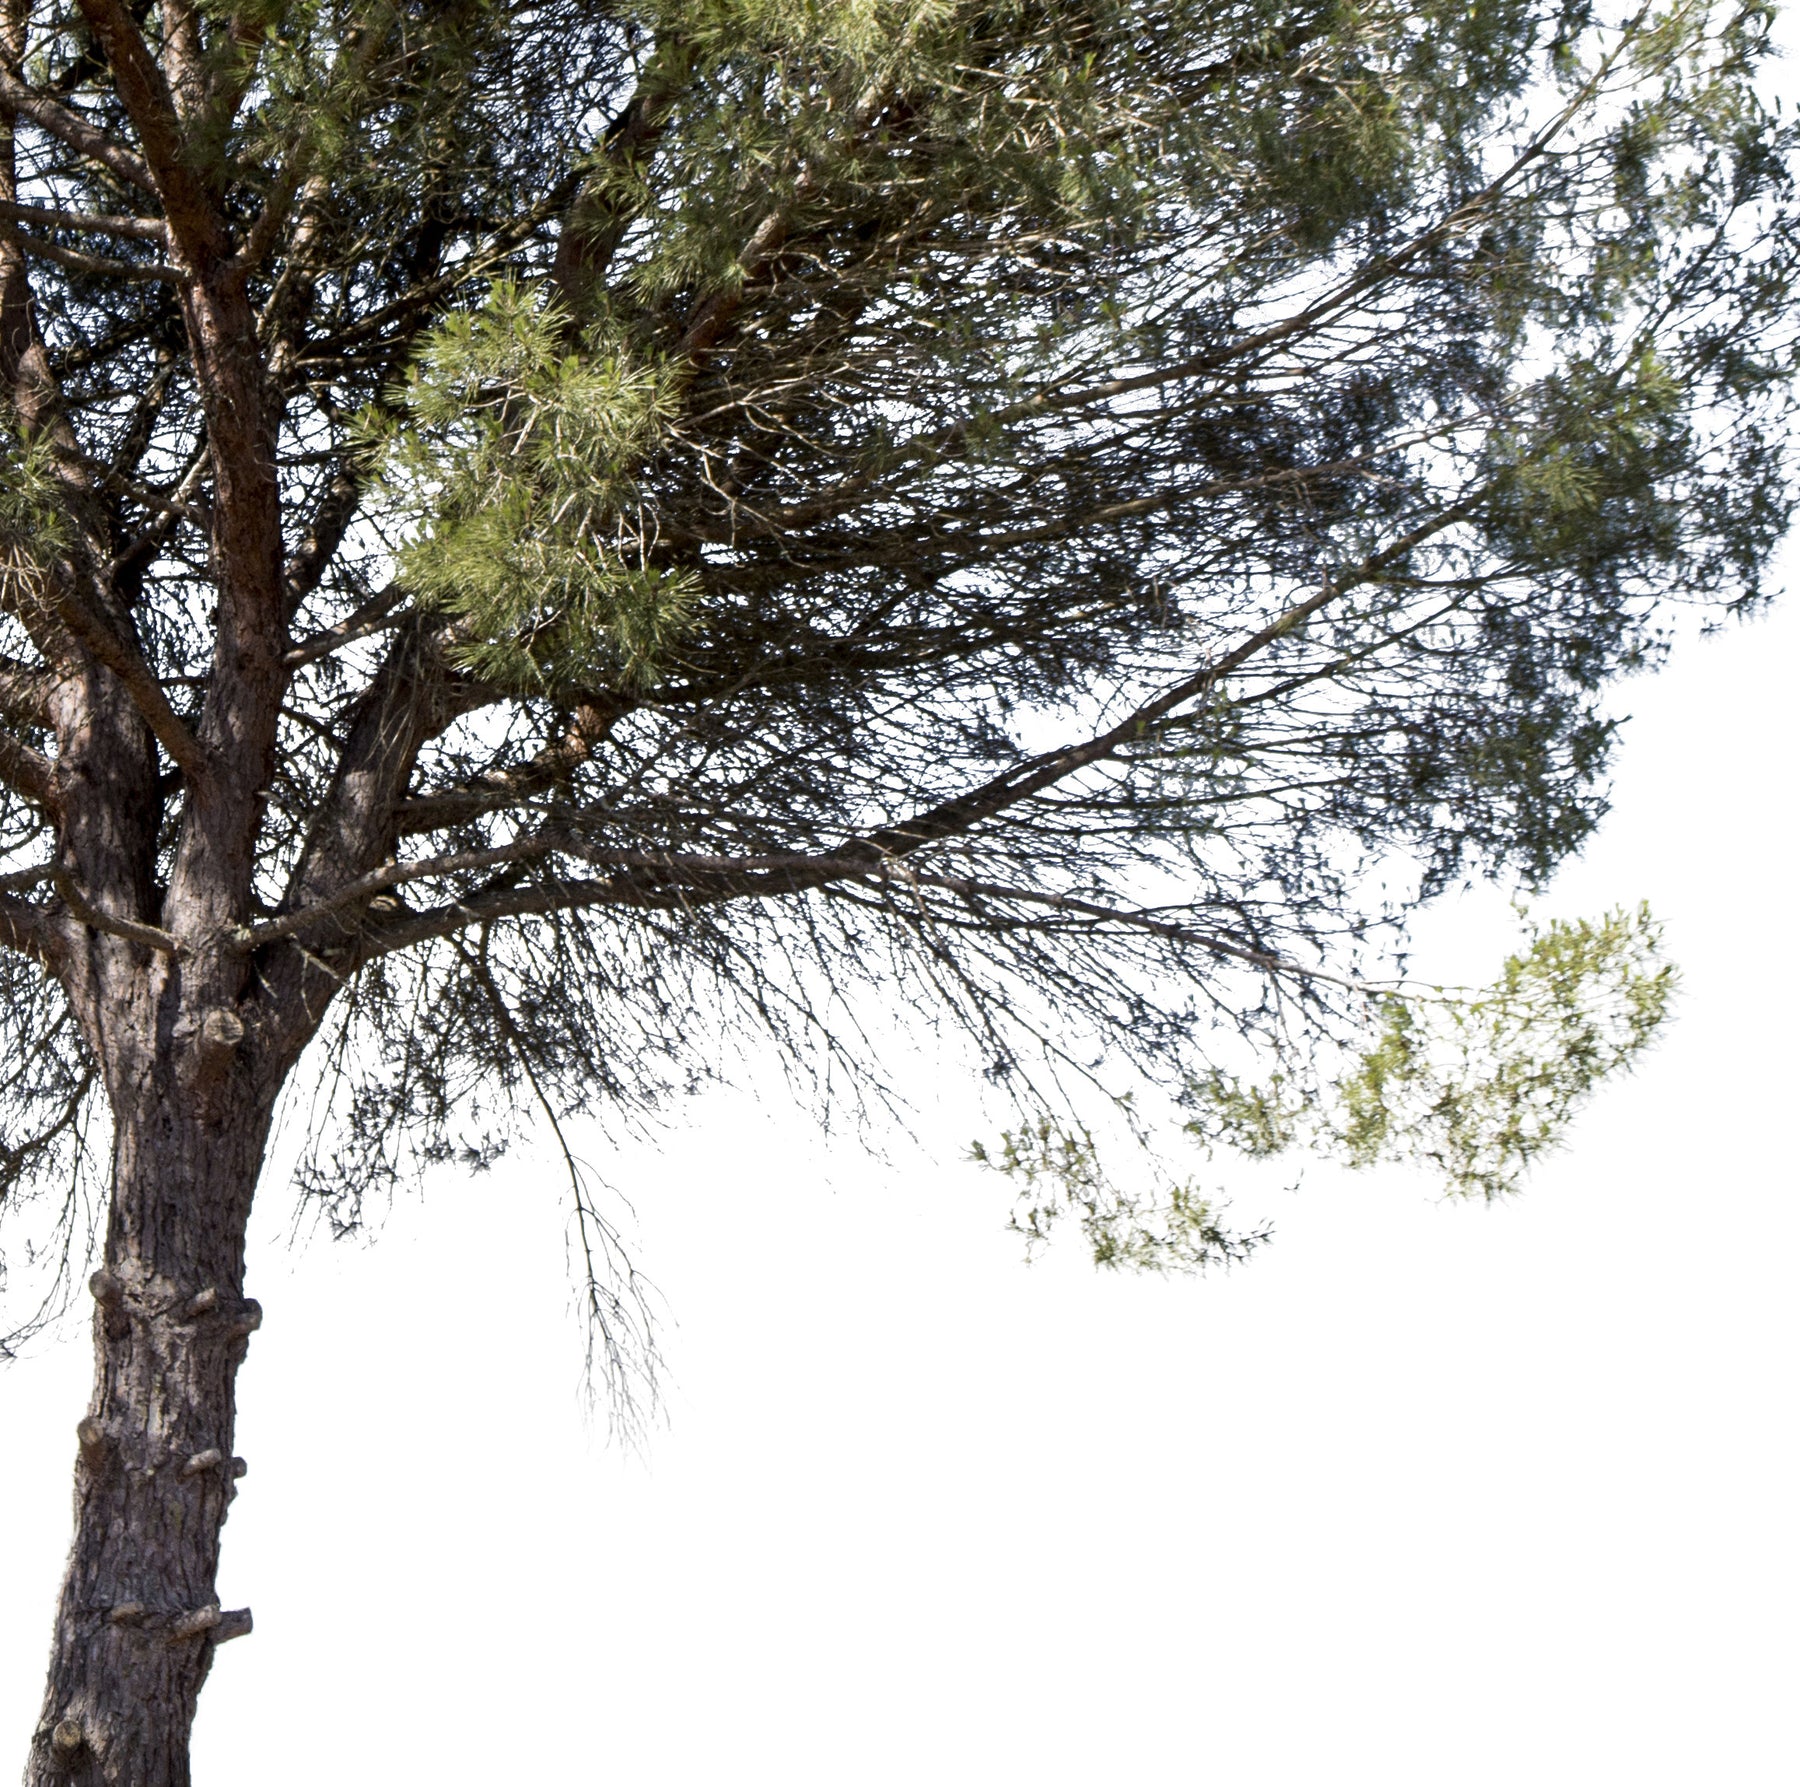 Pinus pinea - cutout trees